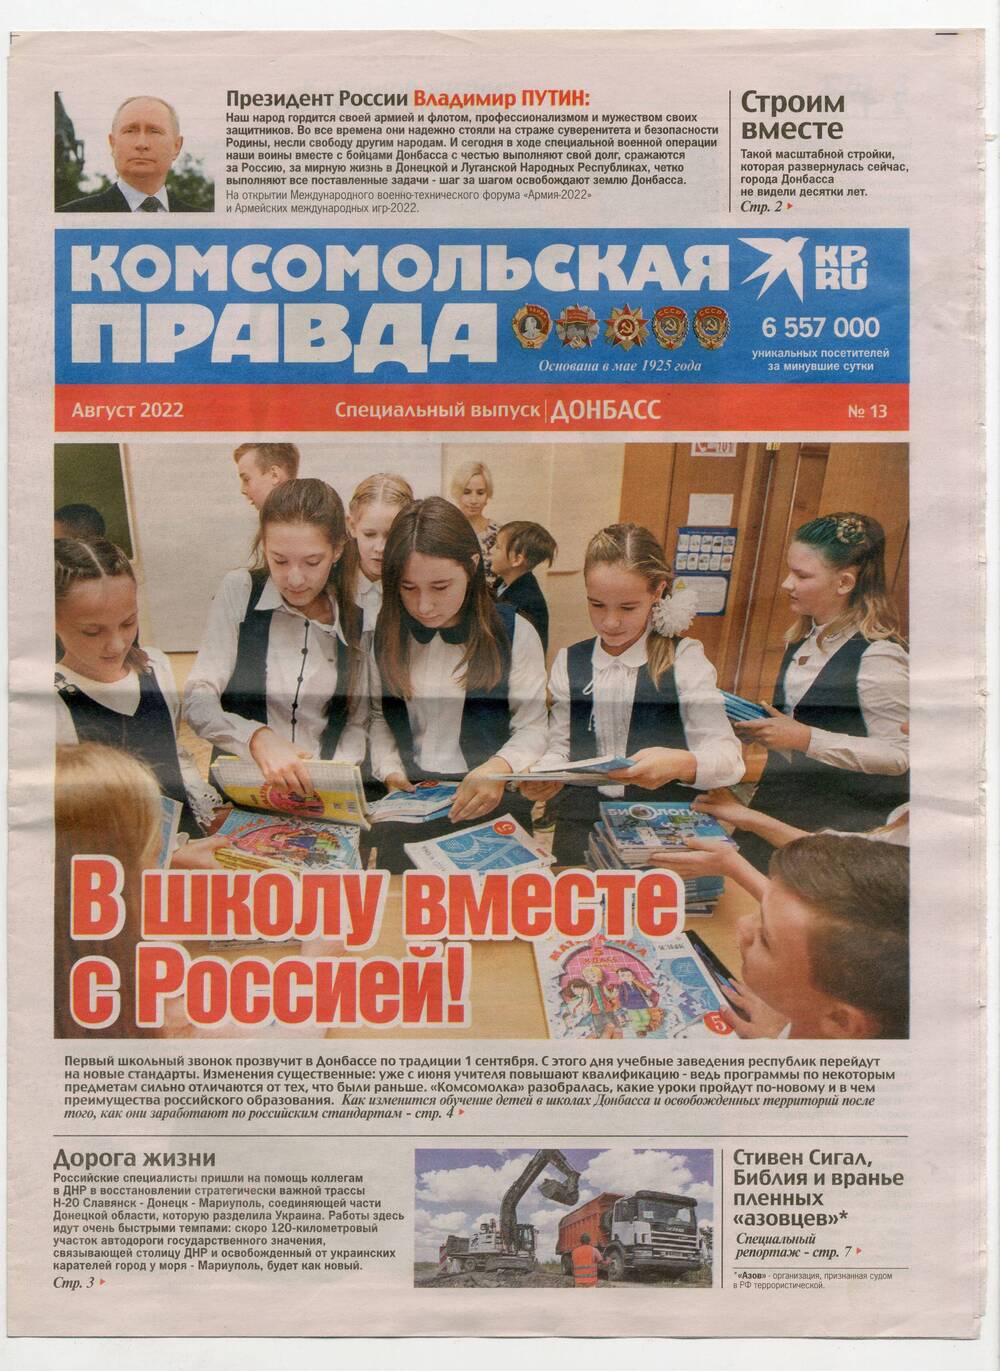 Газета Комсомольская правда. Специальный выпуск. Донбасс. № 13. Август 2022 года.